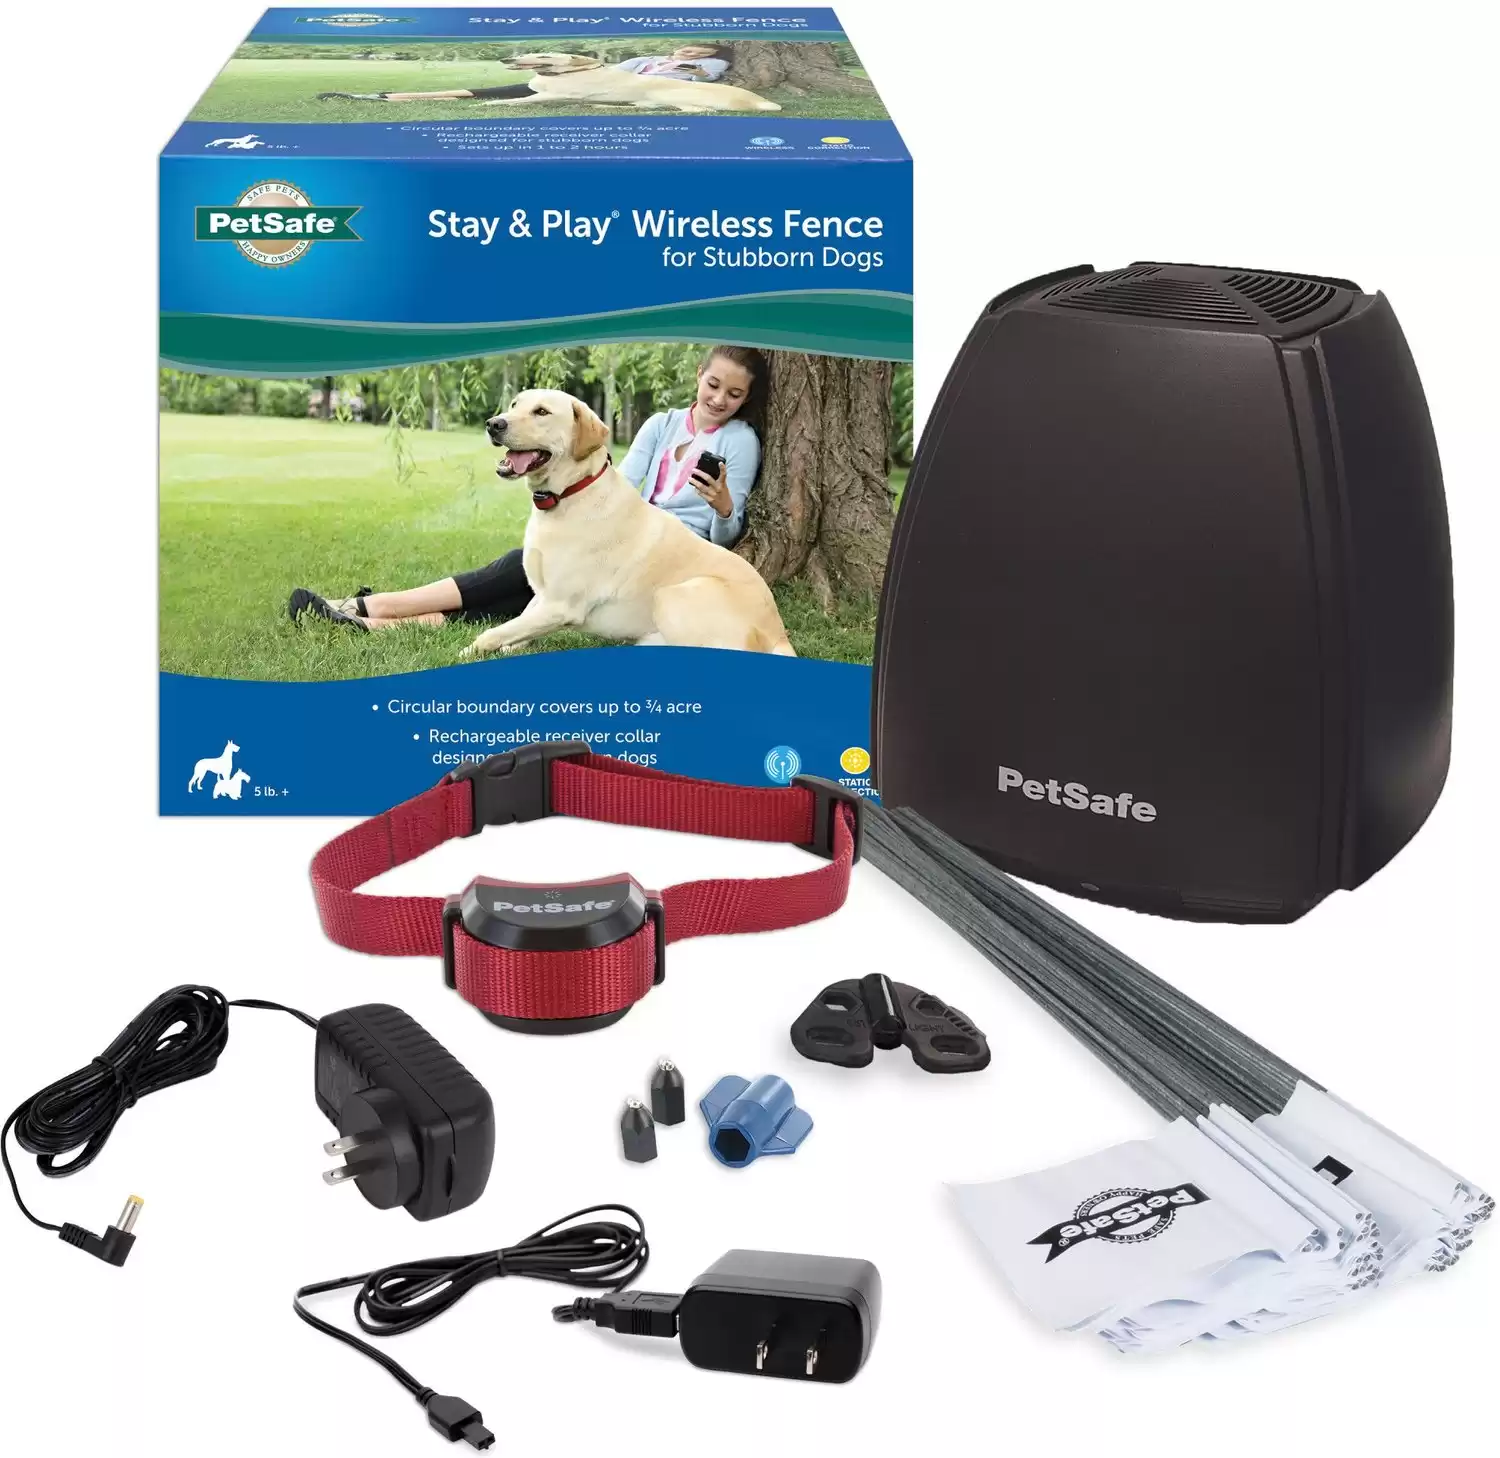 Recinto wireless PetSafe Stay & Play per cani testardi